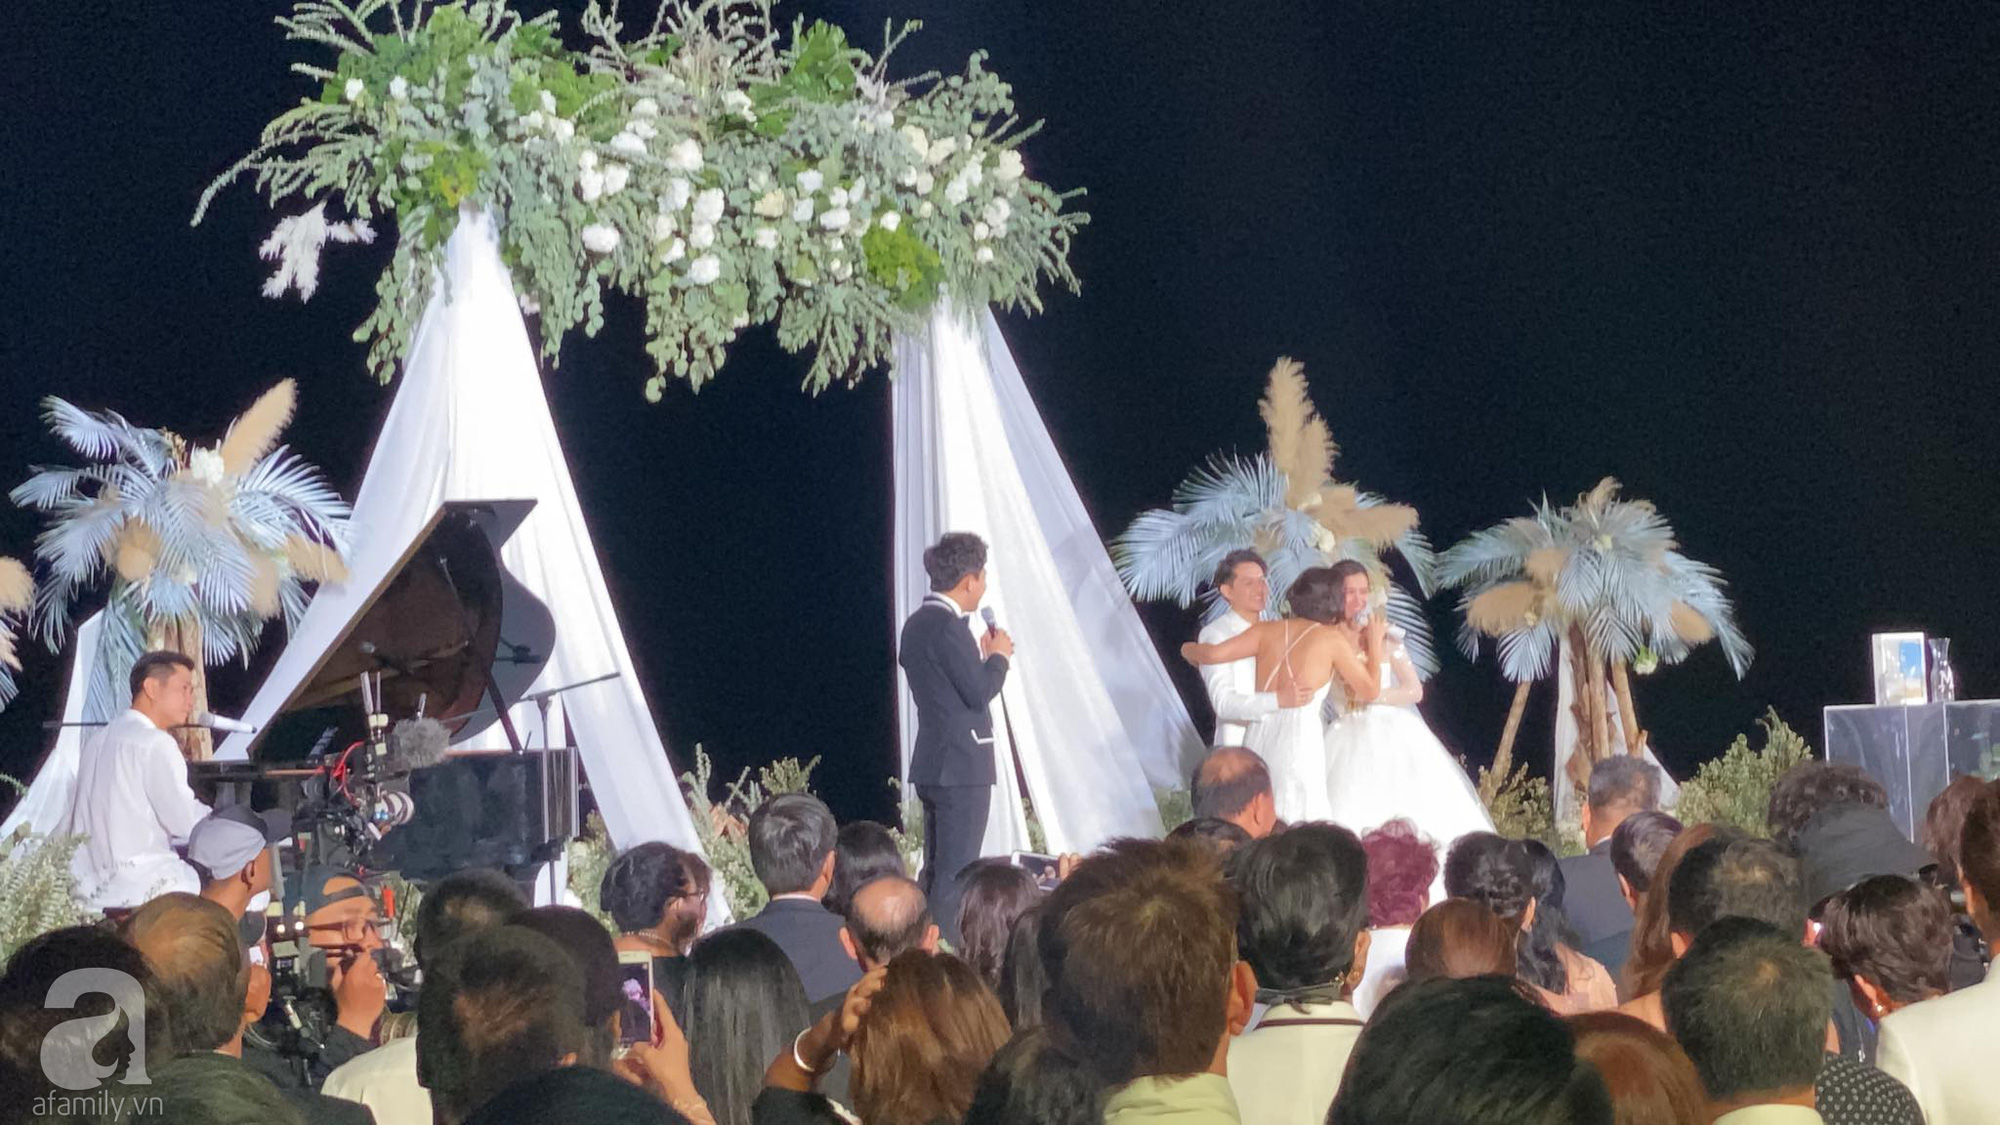 Toàn cảnh đám cưới siêu thế kỷ của Đông Nhi và Ông Cao Thắng: Cô dâu chú rể khóc hết nước mắt khi nhảy cùng bố mẹ hai bên - Ảnh 35.